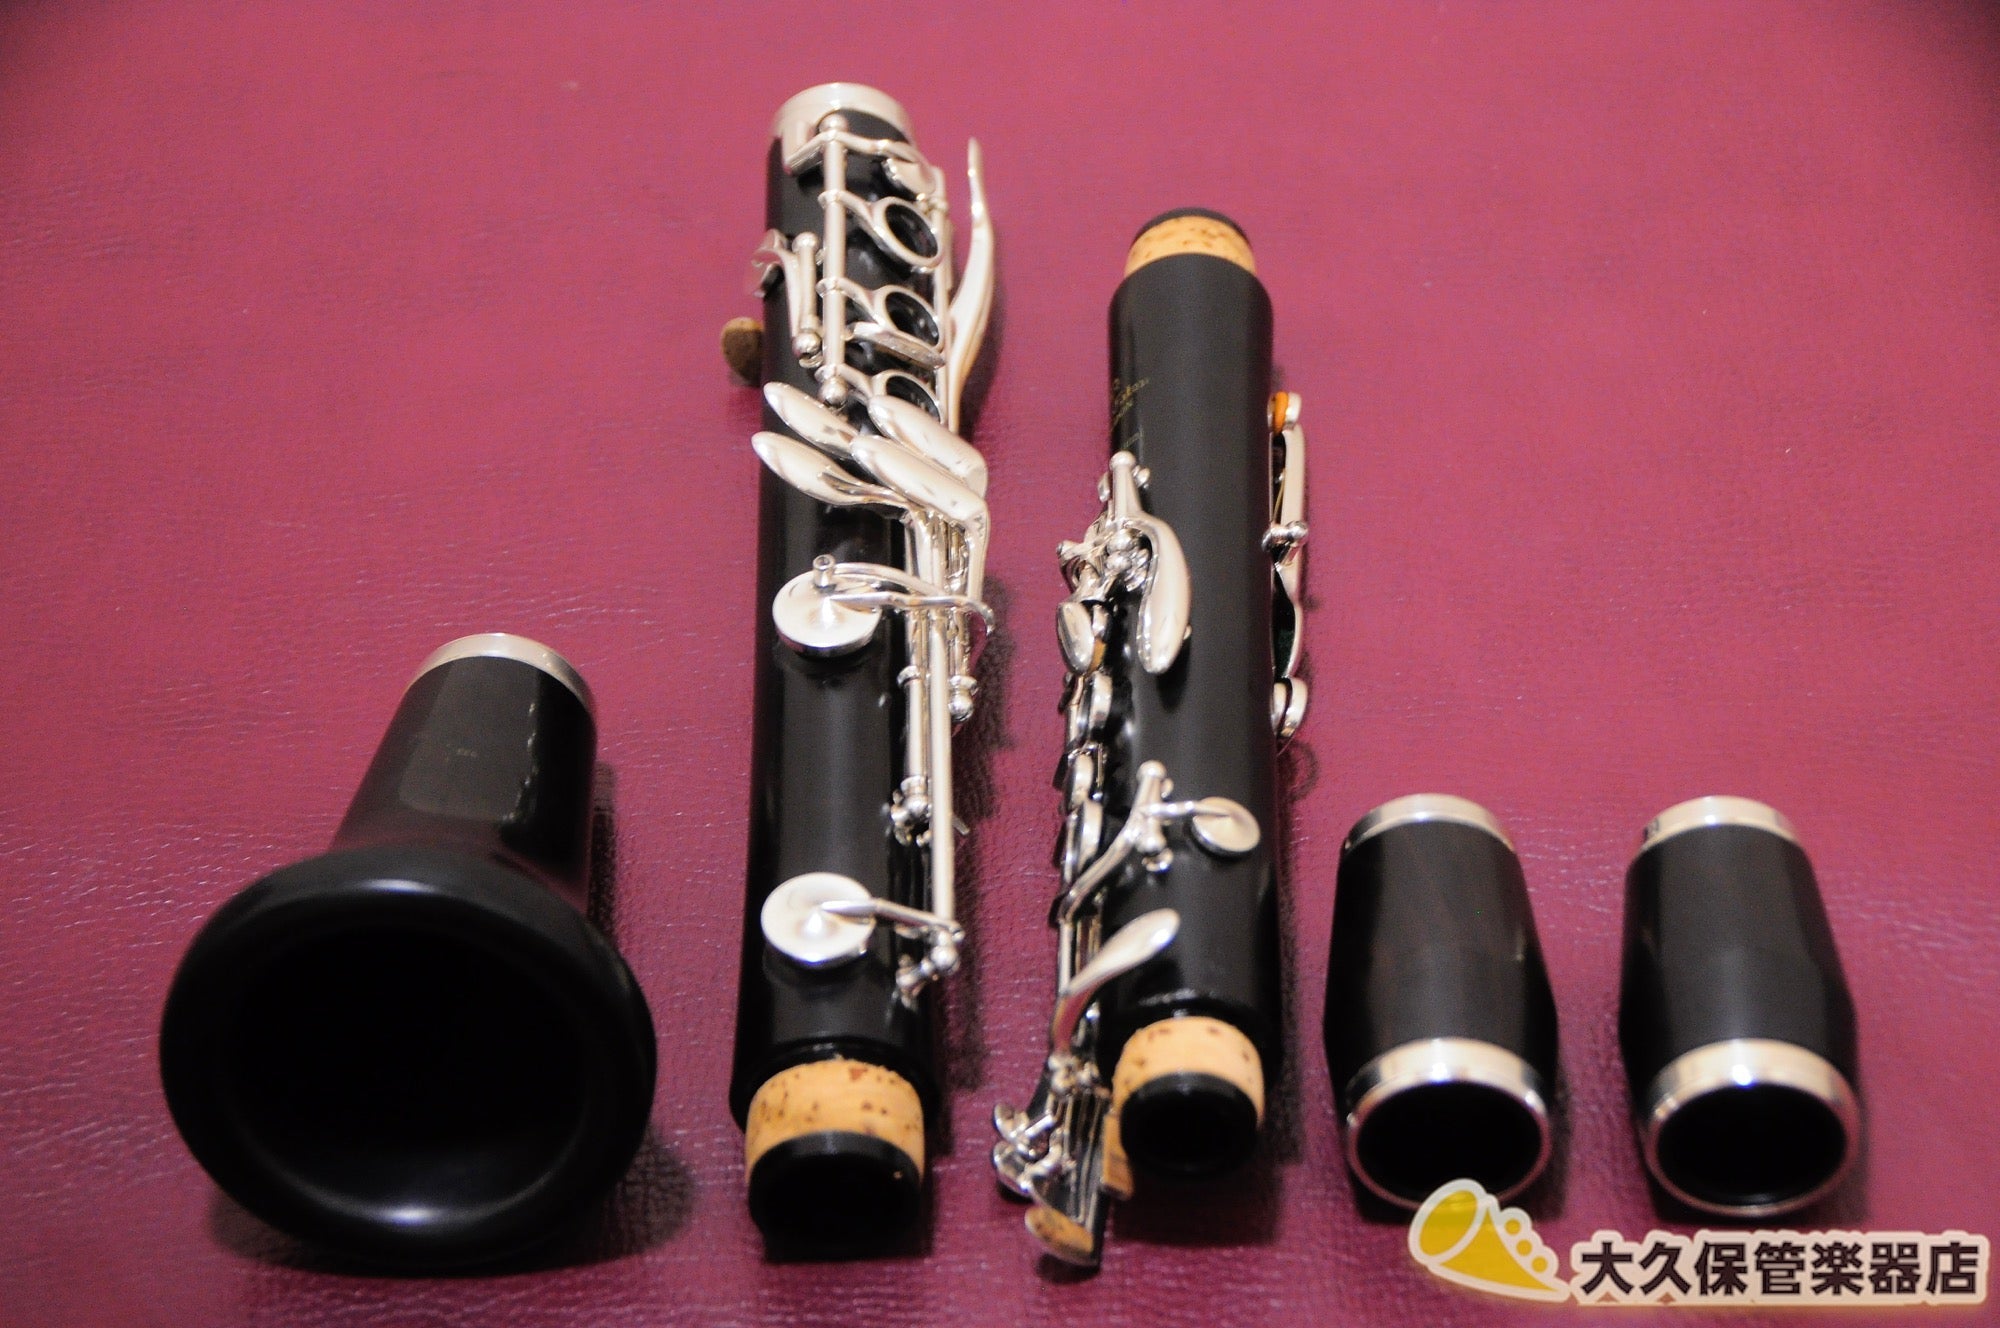 pink clarinet instrument